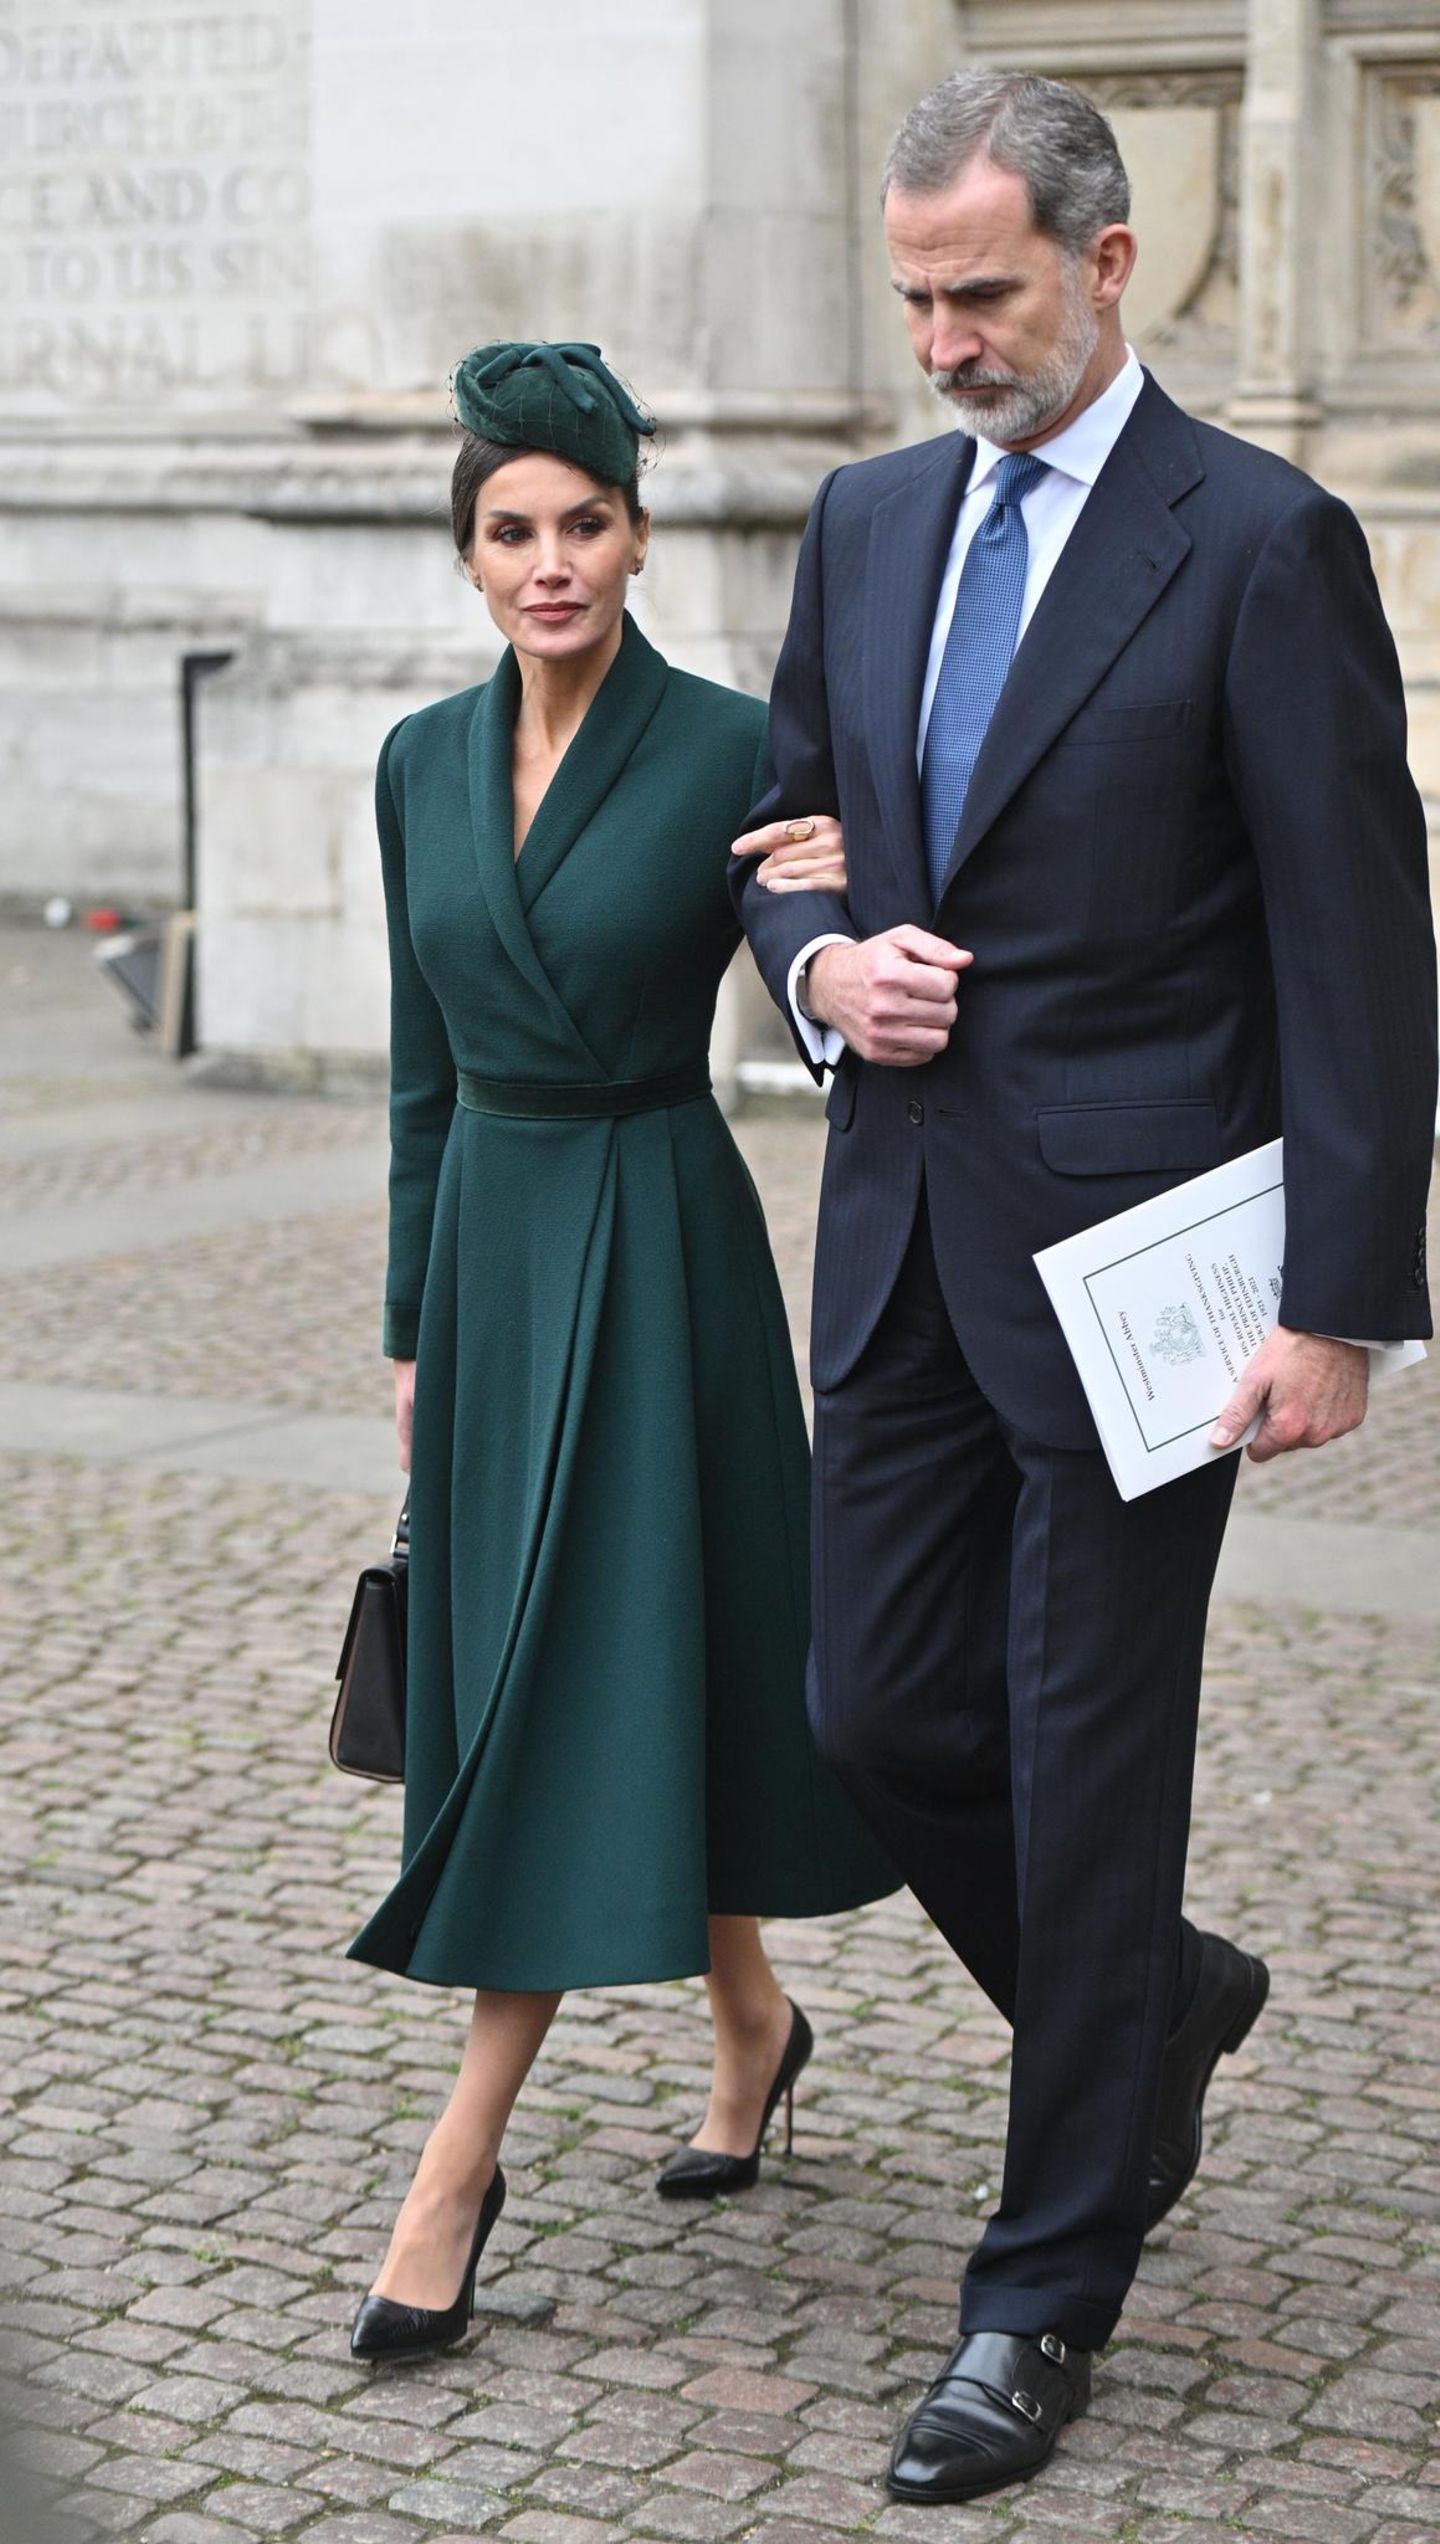 Zur Trauerfeier von Prinz Philip wählt auch Königin Letizia ein dunkelgrünes Outfit: Das taillierte Mantelkleid kombiniert sie mit einem passenden Hut, schwarzen Pumps von Manolo Blahnik in Schlangenleder-Optik sowie einer schwarzen Tasche von BOSS. Mit dem grünen Look scheint sie sich auch dem Kleid der Queen angepasst zu haben. Sie trägt ebenfalls dunkelgrün.